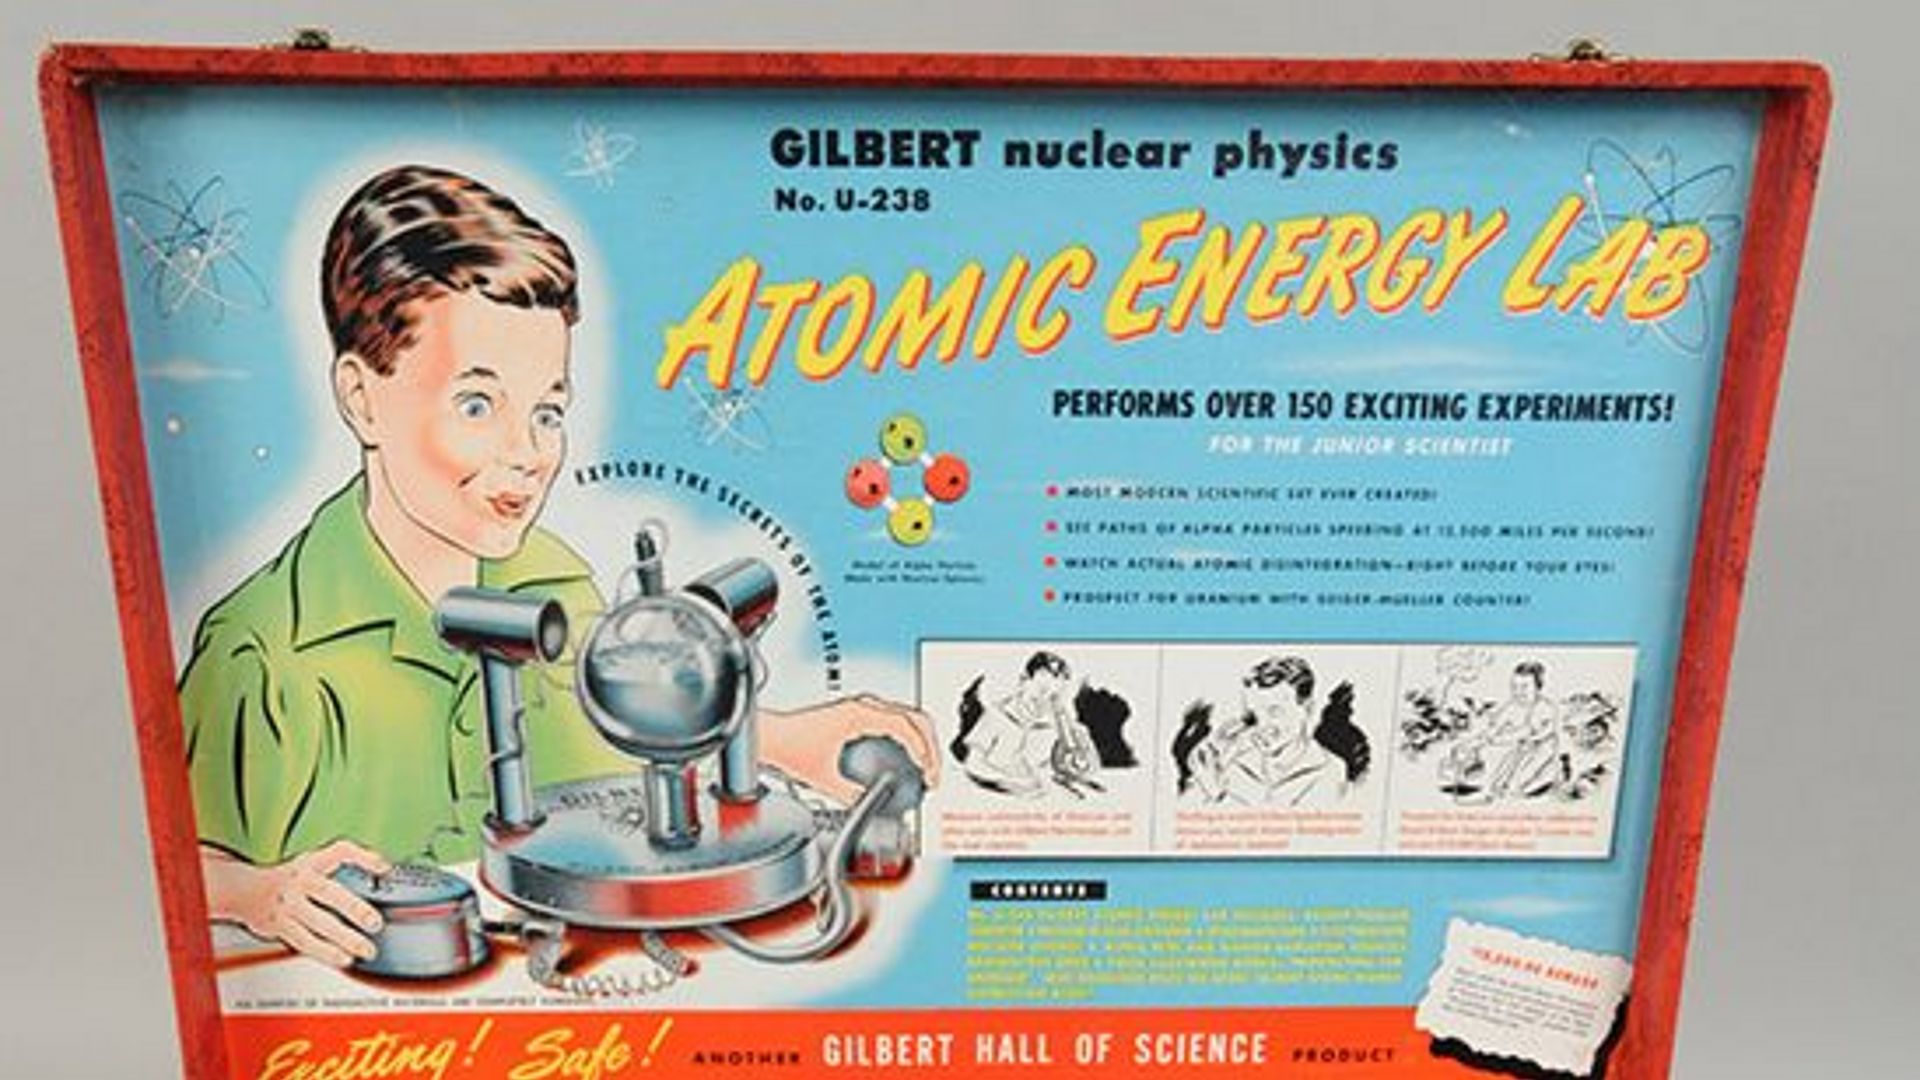 Gilbert U-238 Atomic Energy Lab geöffnet.